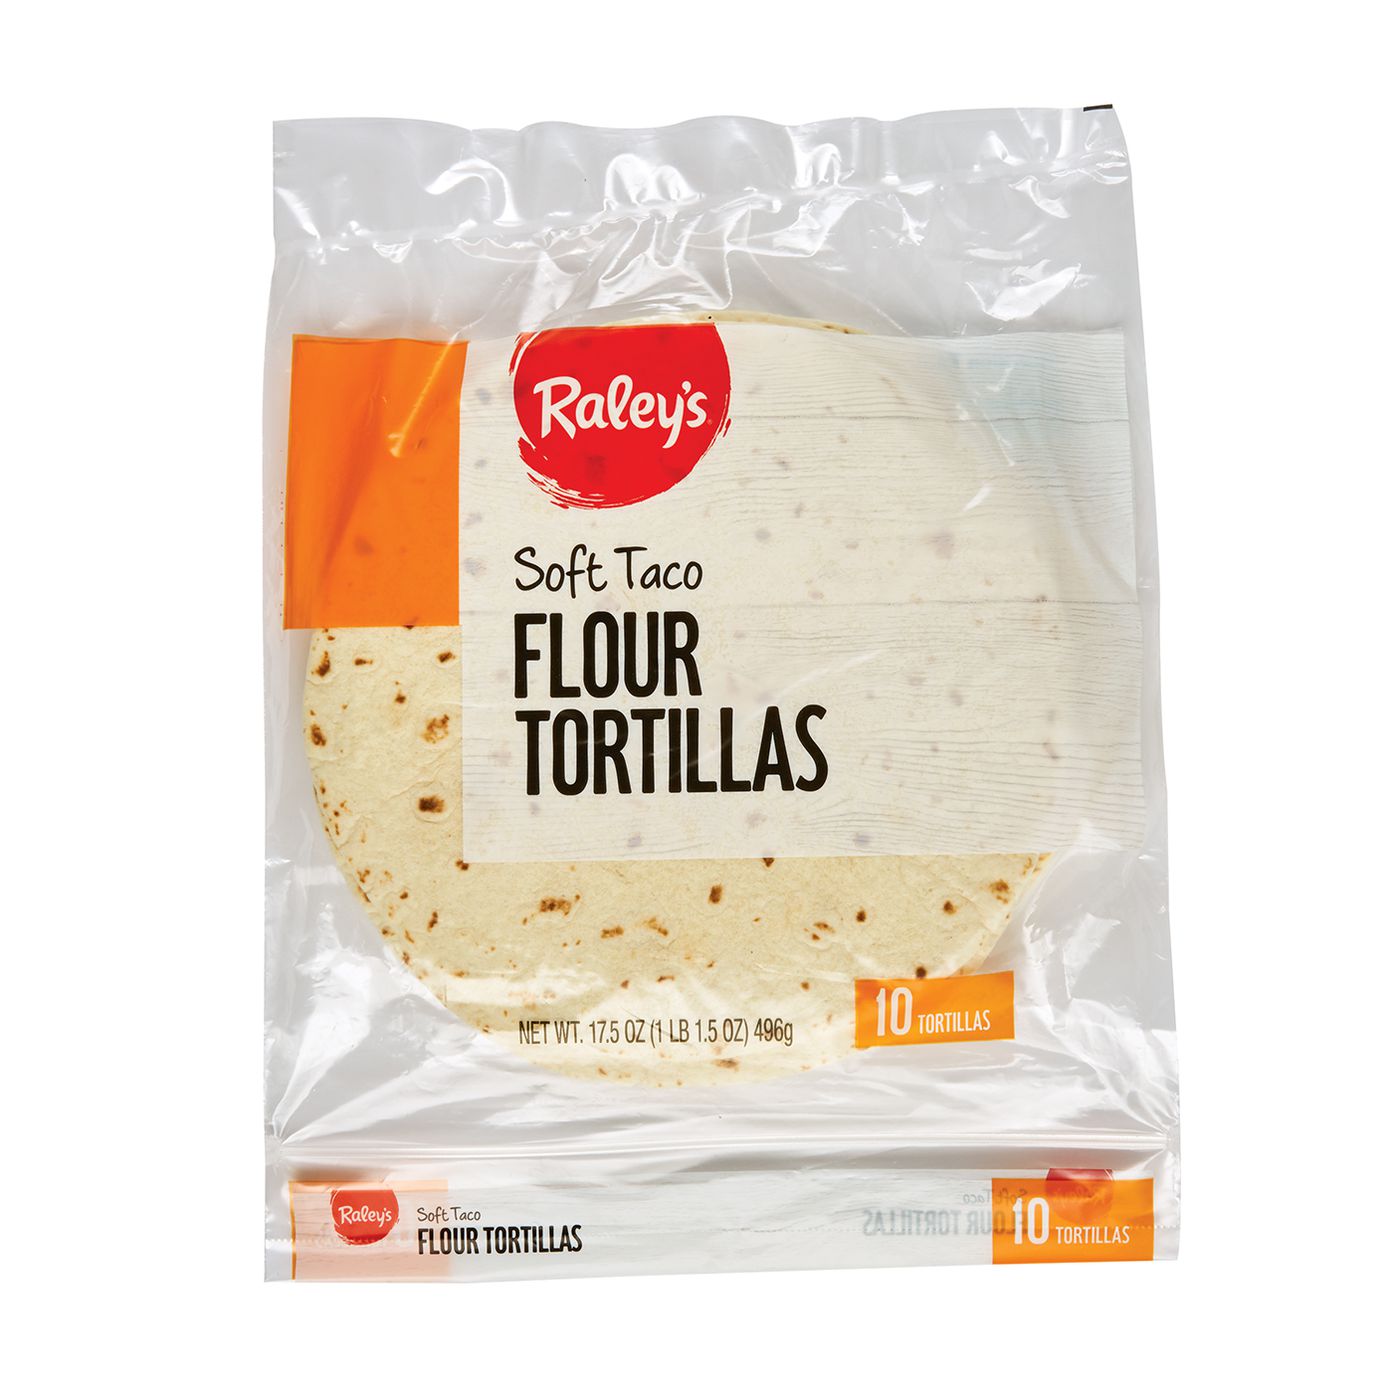 El Comal Soft Taco Tortillas, 24 ct / 32 oz - Foods Co.